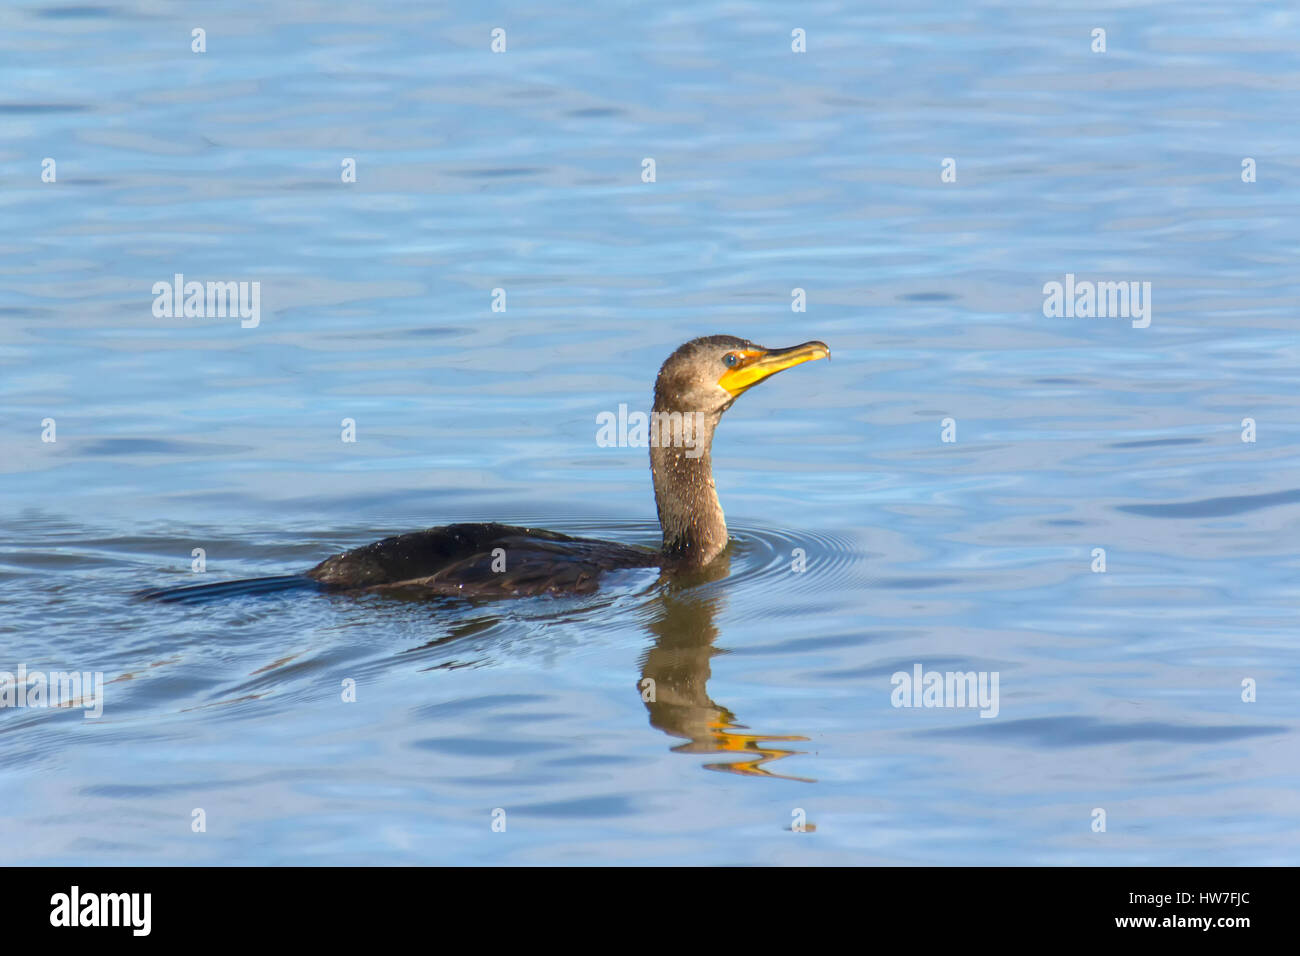 Cormorant swimming in Susquehanna River near Conowingo Dam. Stock Photo